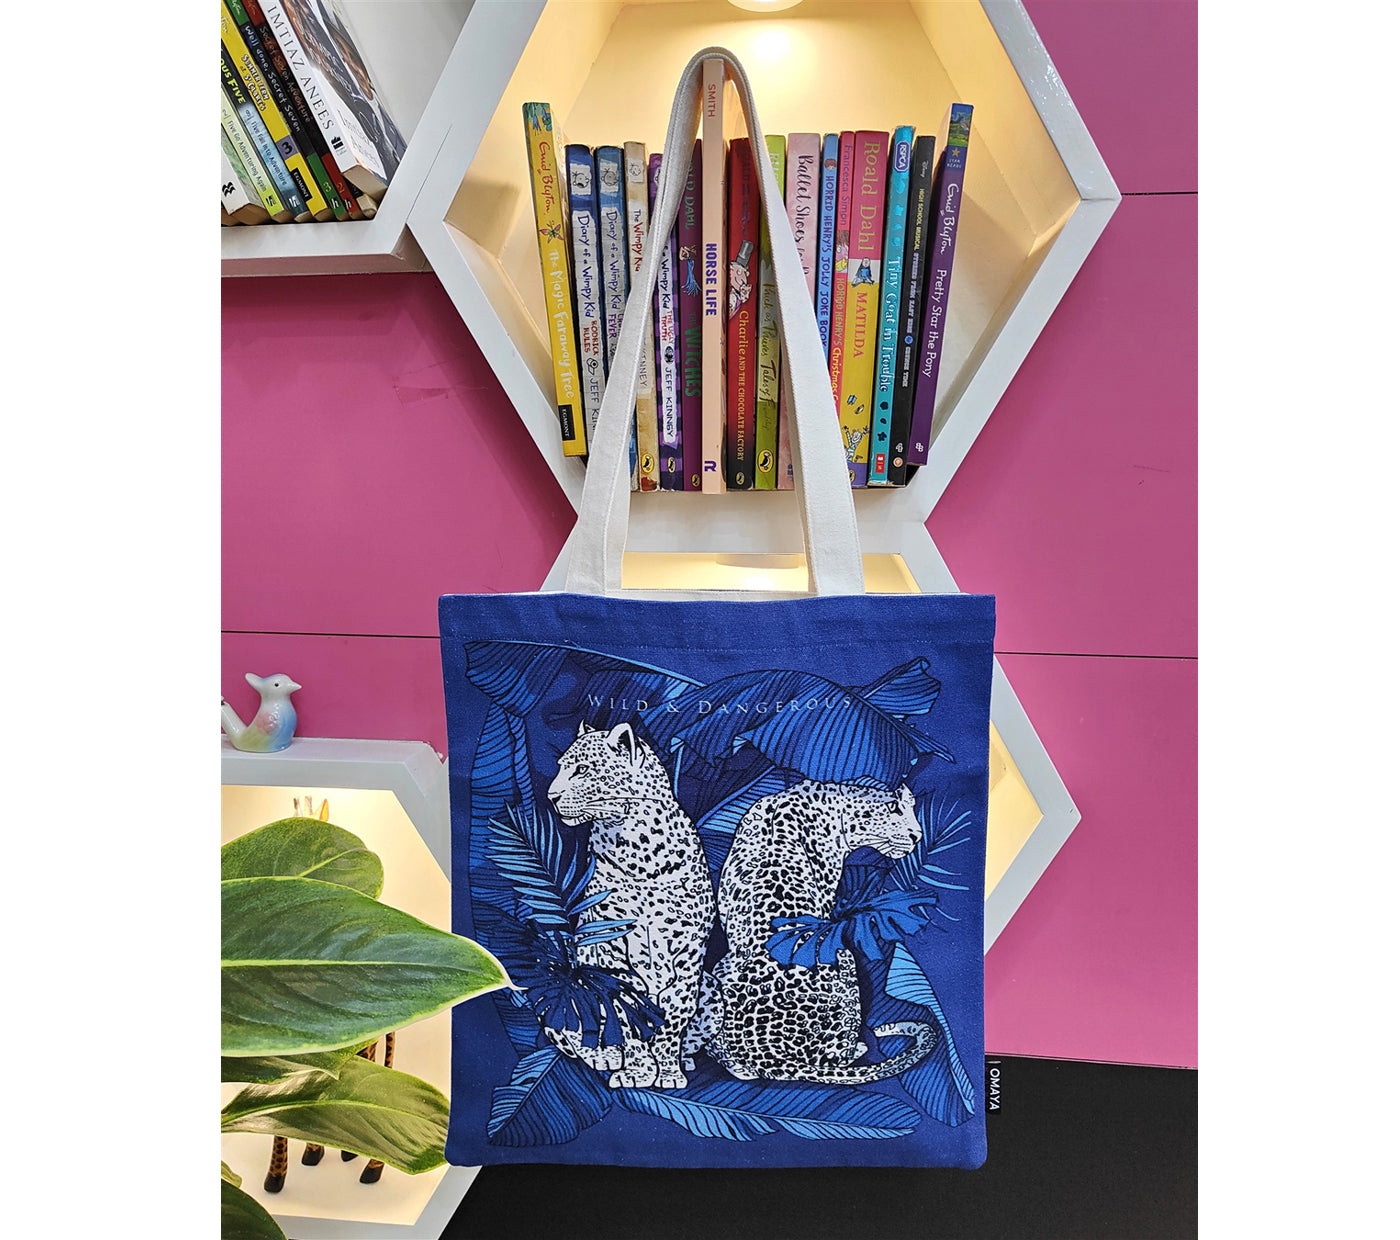 Blue Leopard  Canvas Tote bag 34×36 cm